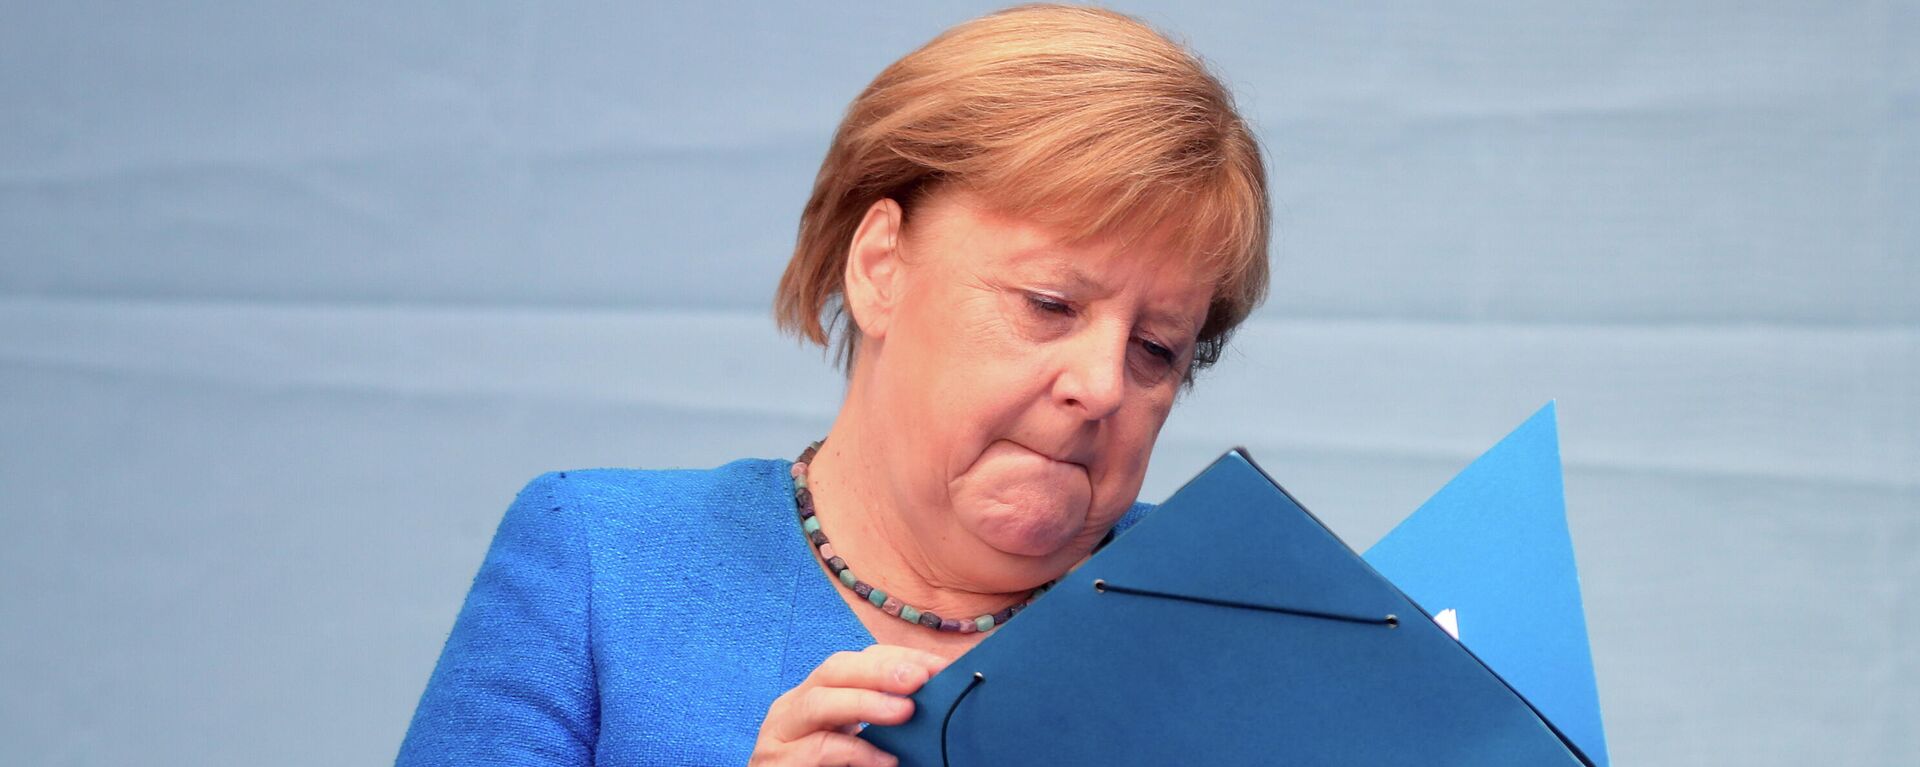 Angela Merkel, canciller de Alemania - Sputnik Mundo, 1920, 26.09.2021